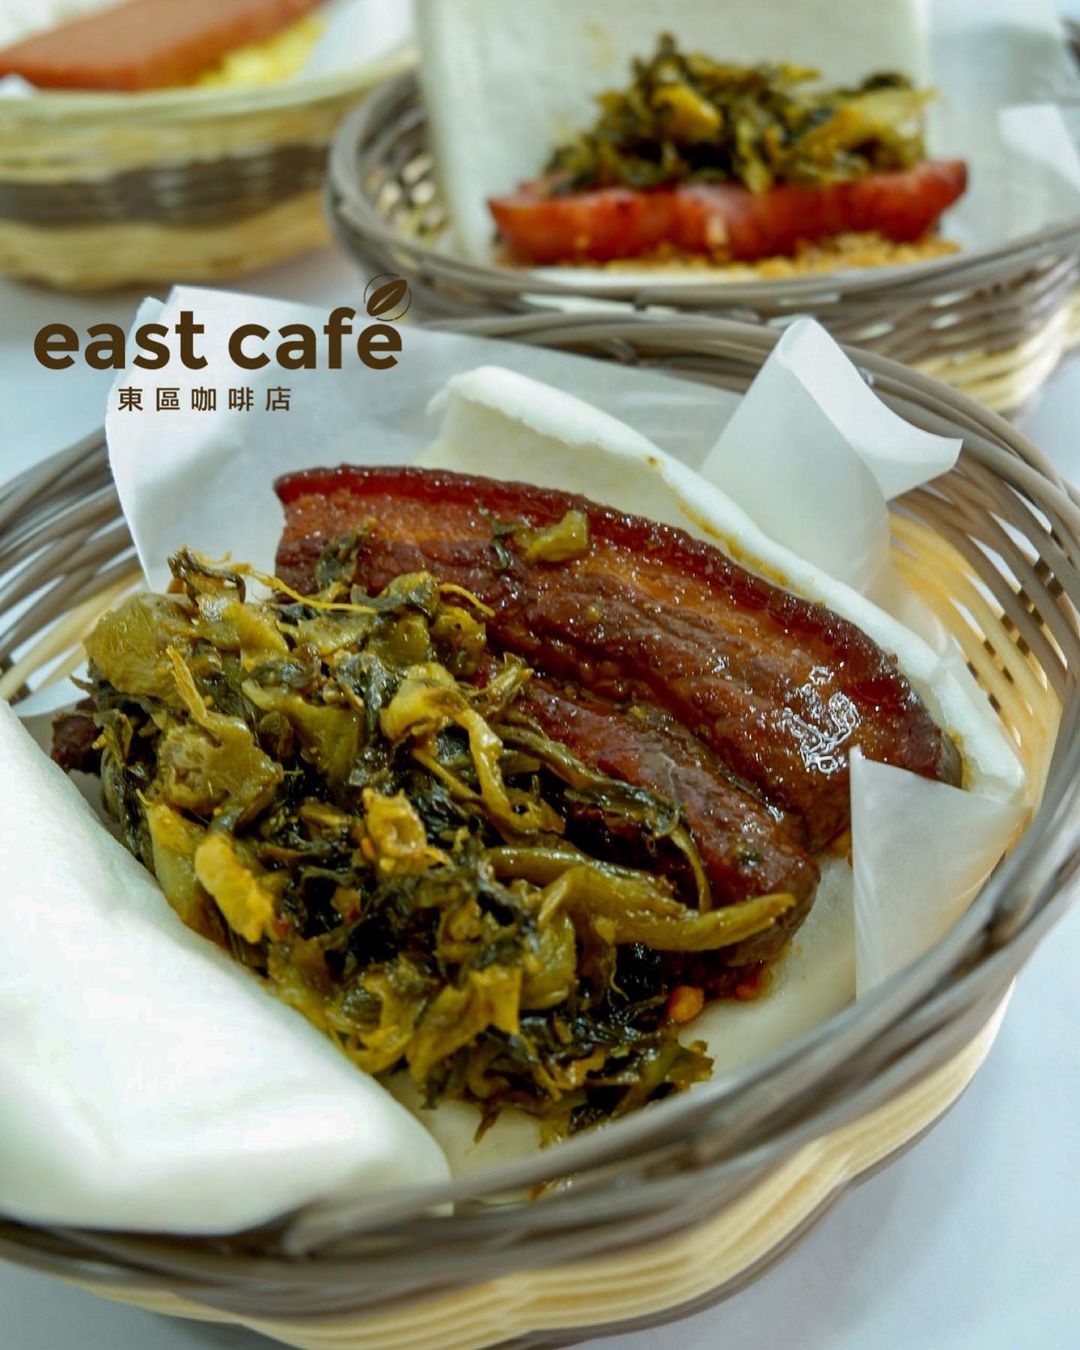 East Cafe - honma cua pao